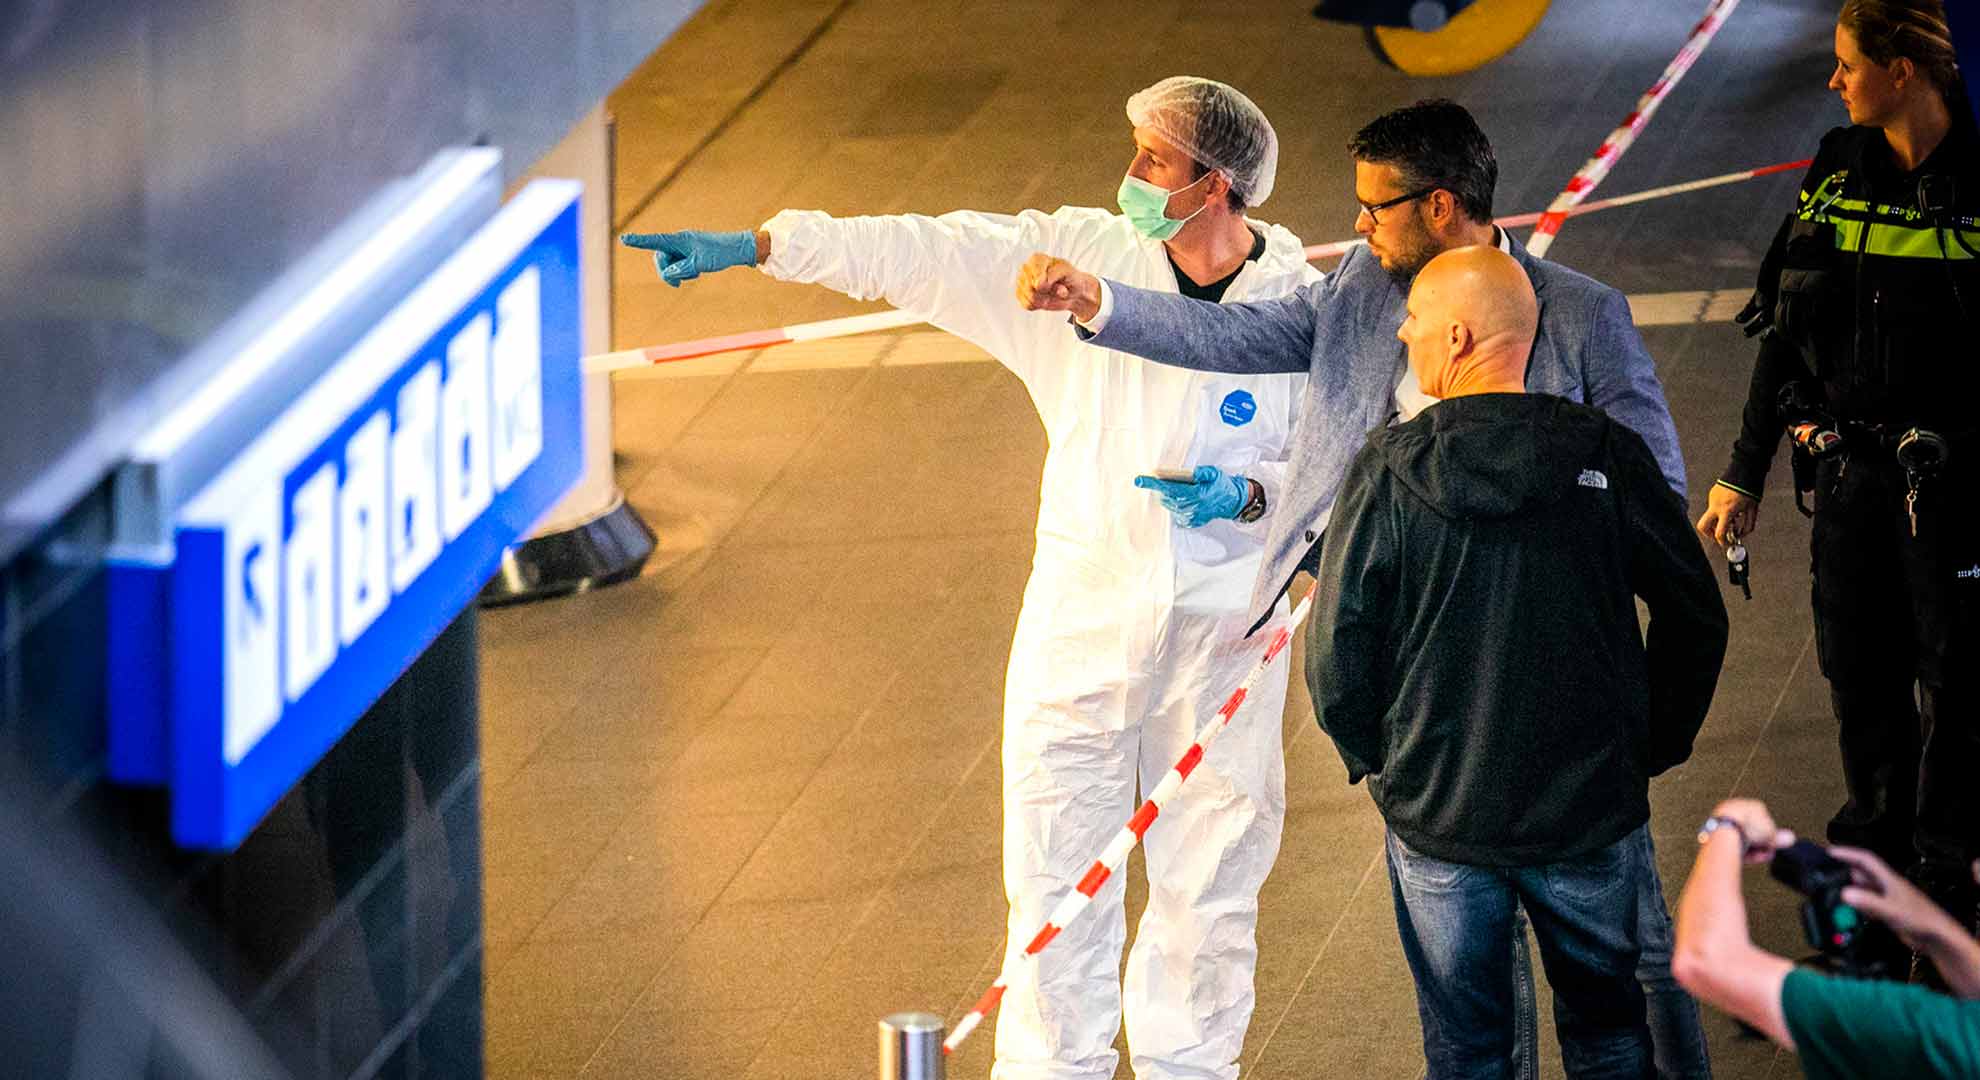 El atacante de Ámsterdam tenía una ”motivación terrorista»